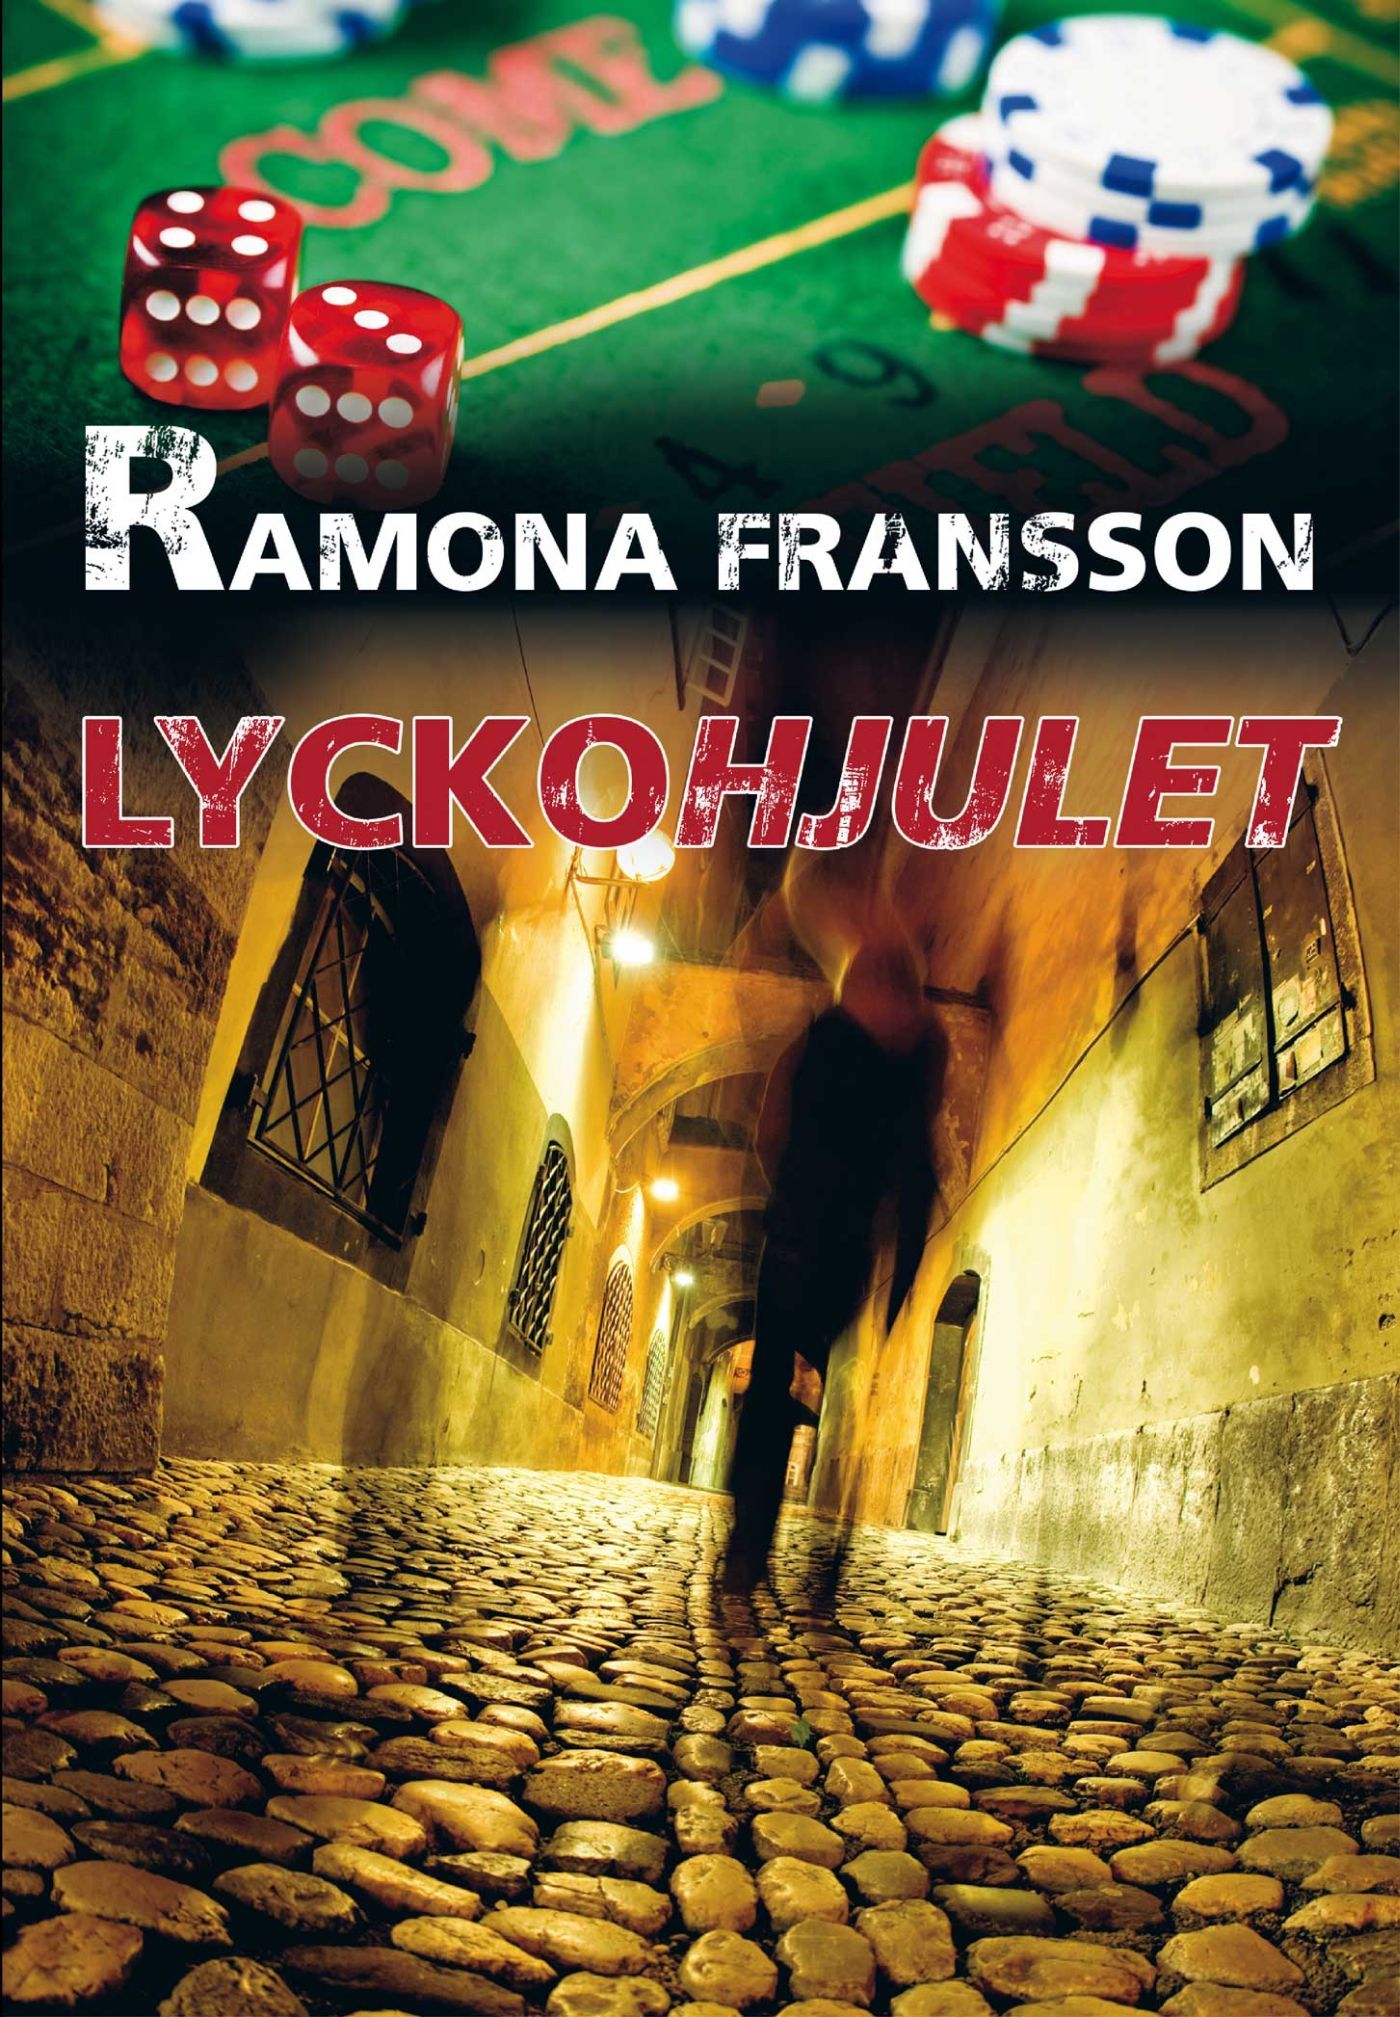 Lyckohjulet, e-bog af Ramona Fransson